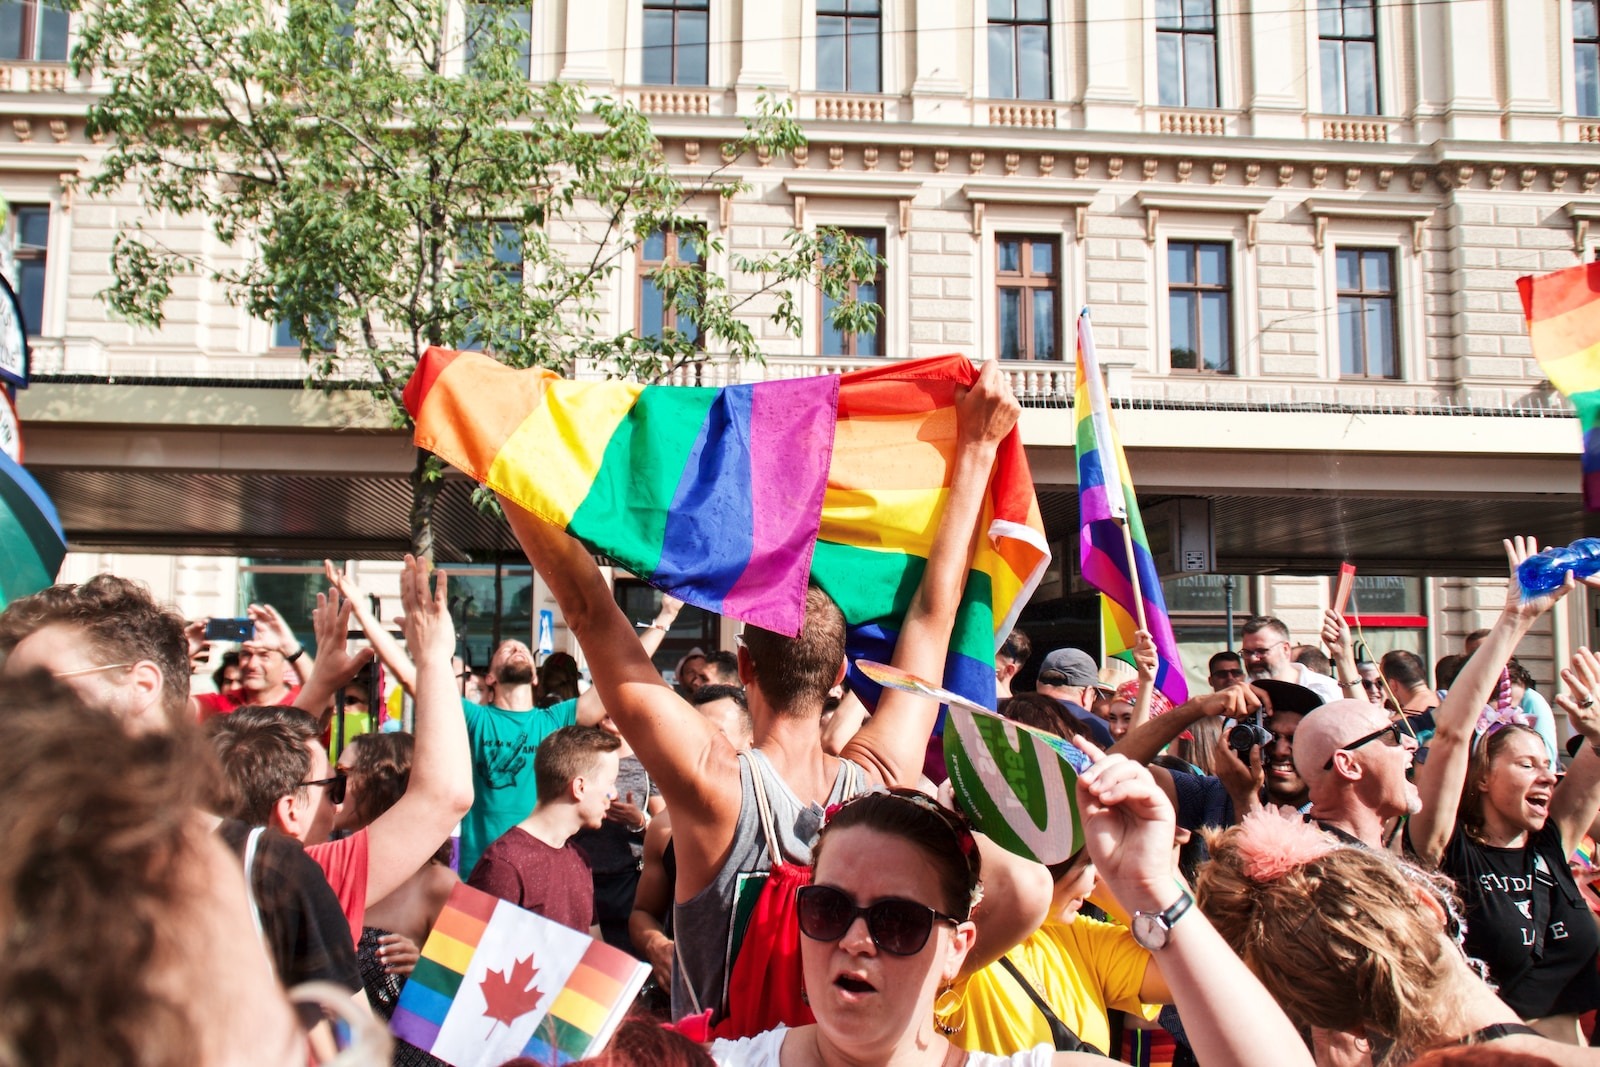 Liste de Choses à Emporter pour la Pride : Ne Rien Oublier